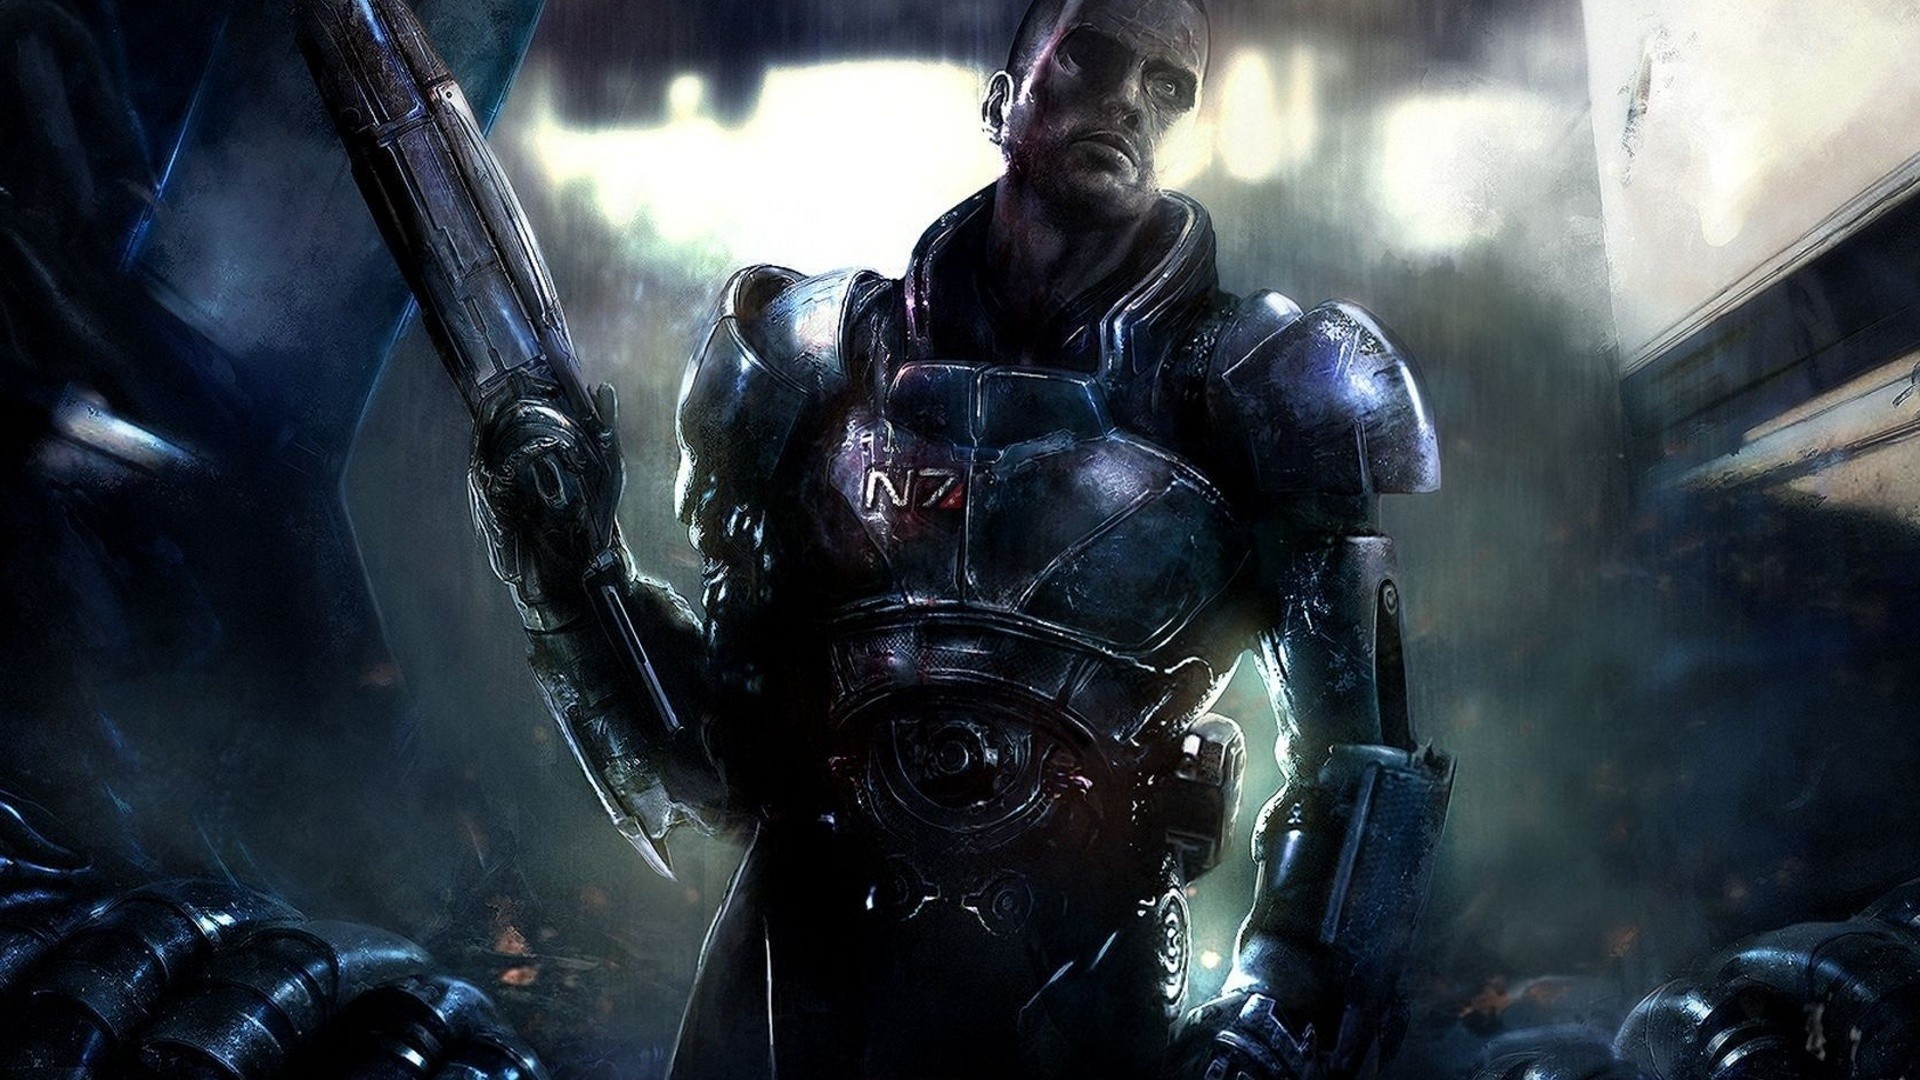 1920x1080 Artwork Commander Shepard Digital Art Mass Effect Video Games